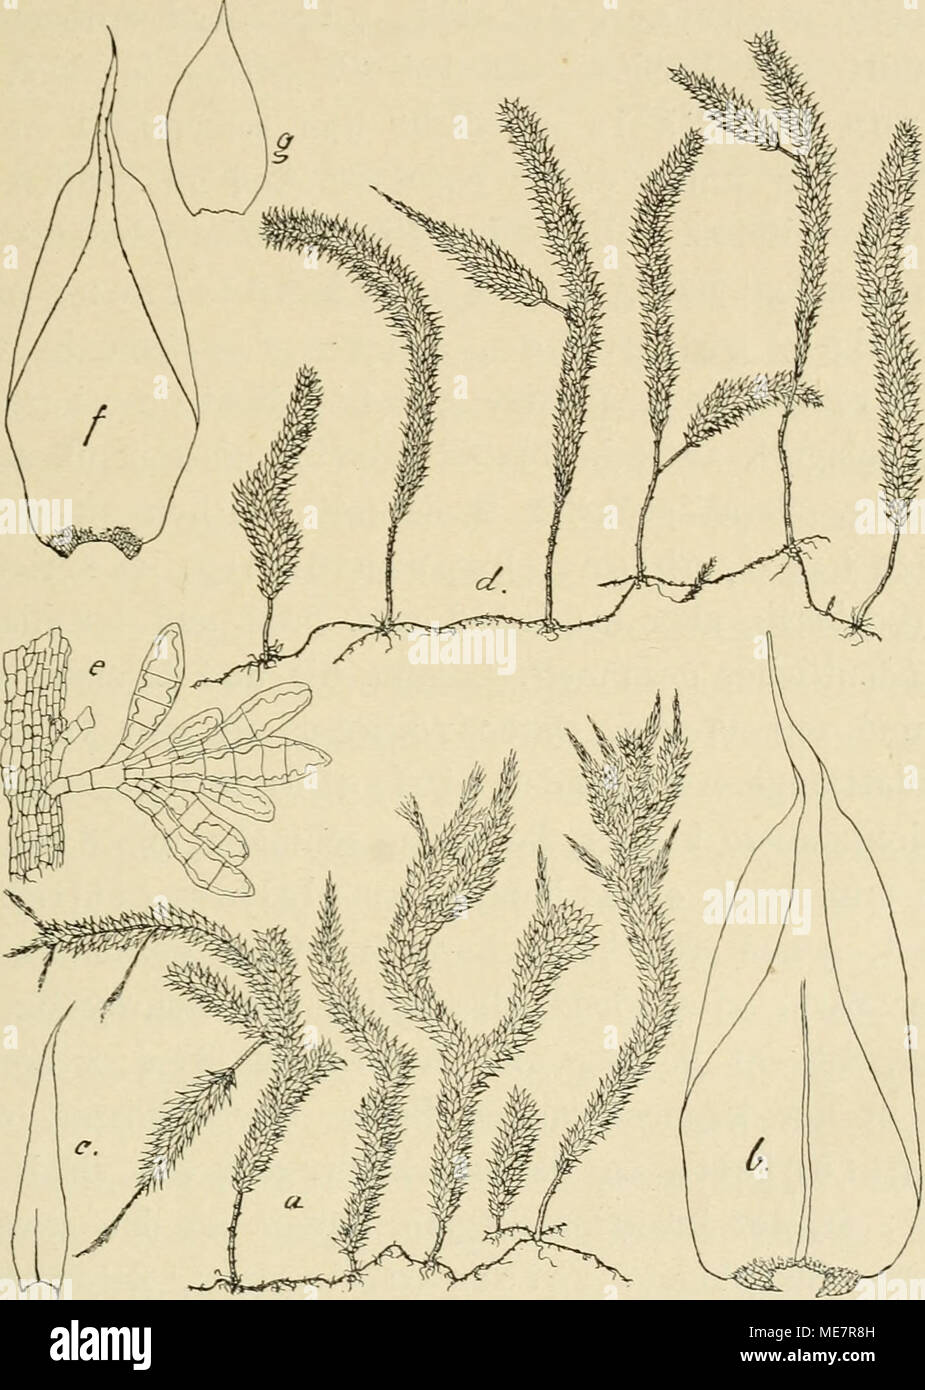 . Die Musci der Flora von Buitenzorg : zugleich Laubmoosflora von Java . Pterobriiopsis crassicaulis (C. Müll.) und Pterobnjopsis gedehensis FLScn. a. Habitusbild (natüil. Grösse). e. Stengelbürtige Brutkörper -7-. b. Stengelblatt V- /• Stcngelblatt '/• c. Niederblatt des sec. Stengels Y- 9- Niederblatt '/. d. Habitusbild von P gedehensis (uatürl. Grösse). blätter, aber die pfriemliche Spitze deutlich gezähnelt, ferner die ßaudzellen verlängert, rechteckig und einen deutlichen Saum Stock Photo